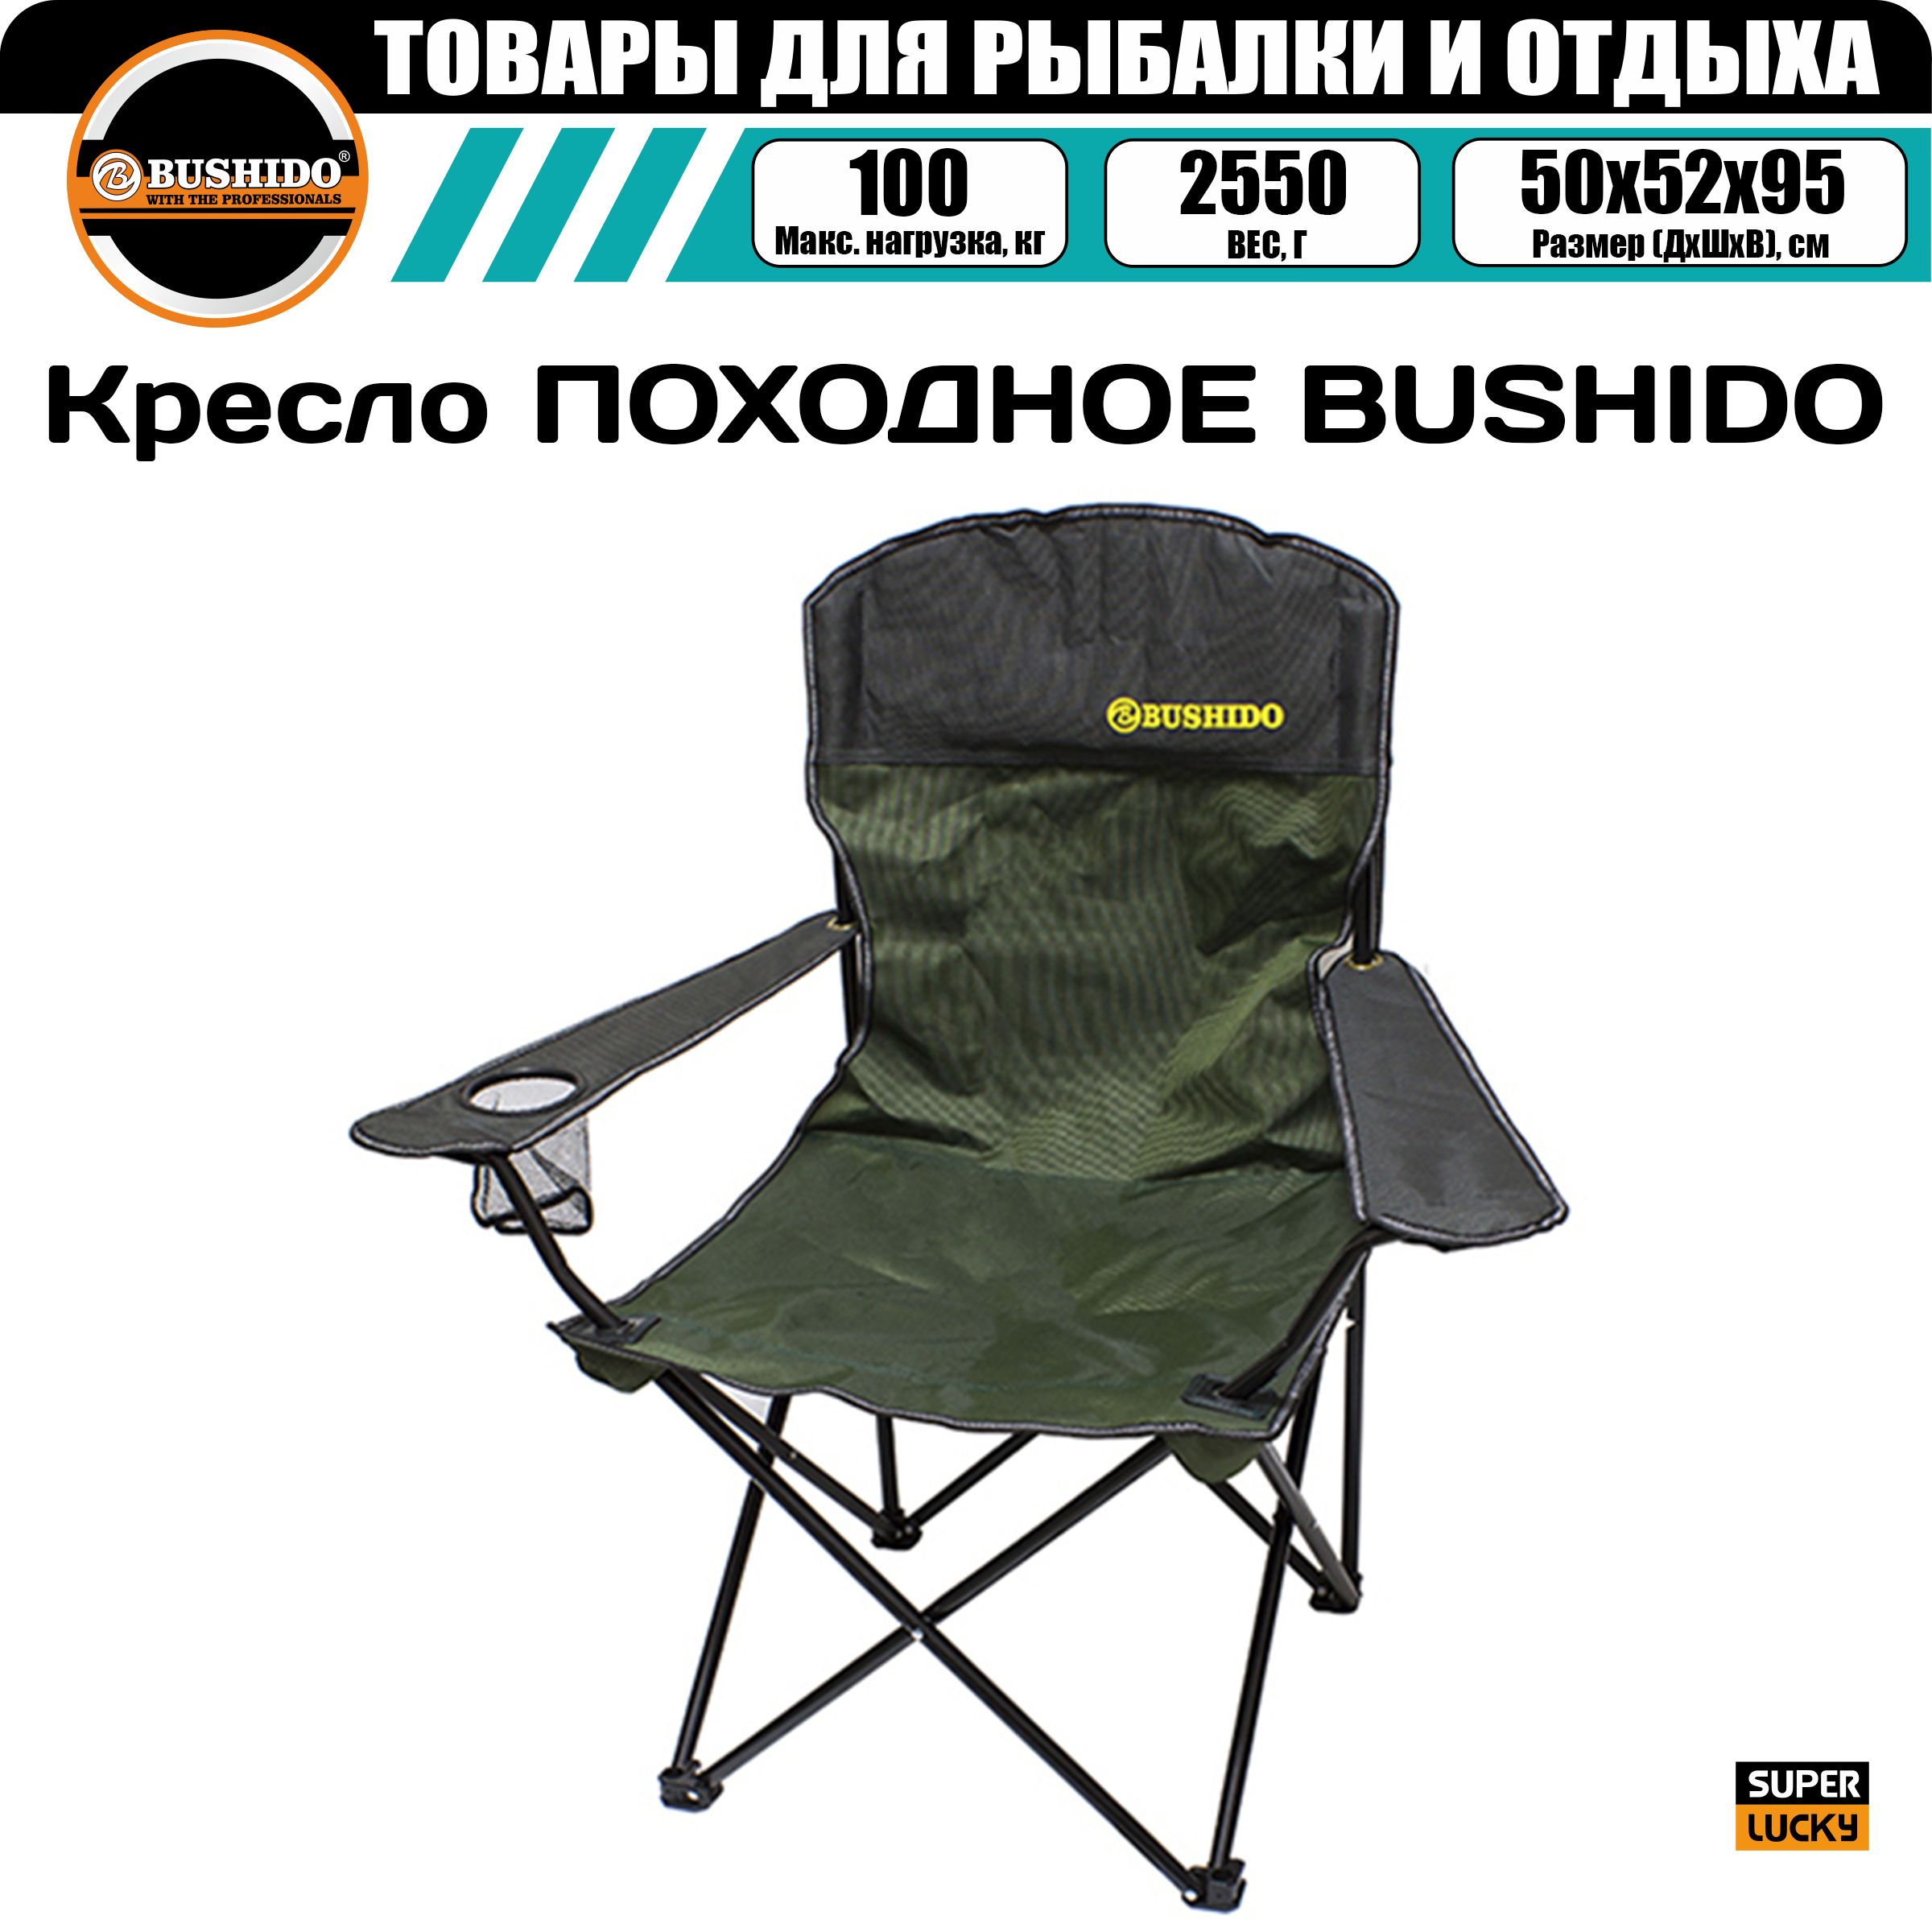 Кресло карповое BUSHIDO с подлокотниками, 1 подстаканник, складное